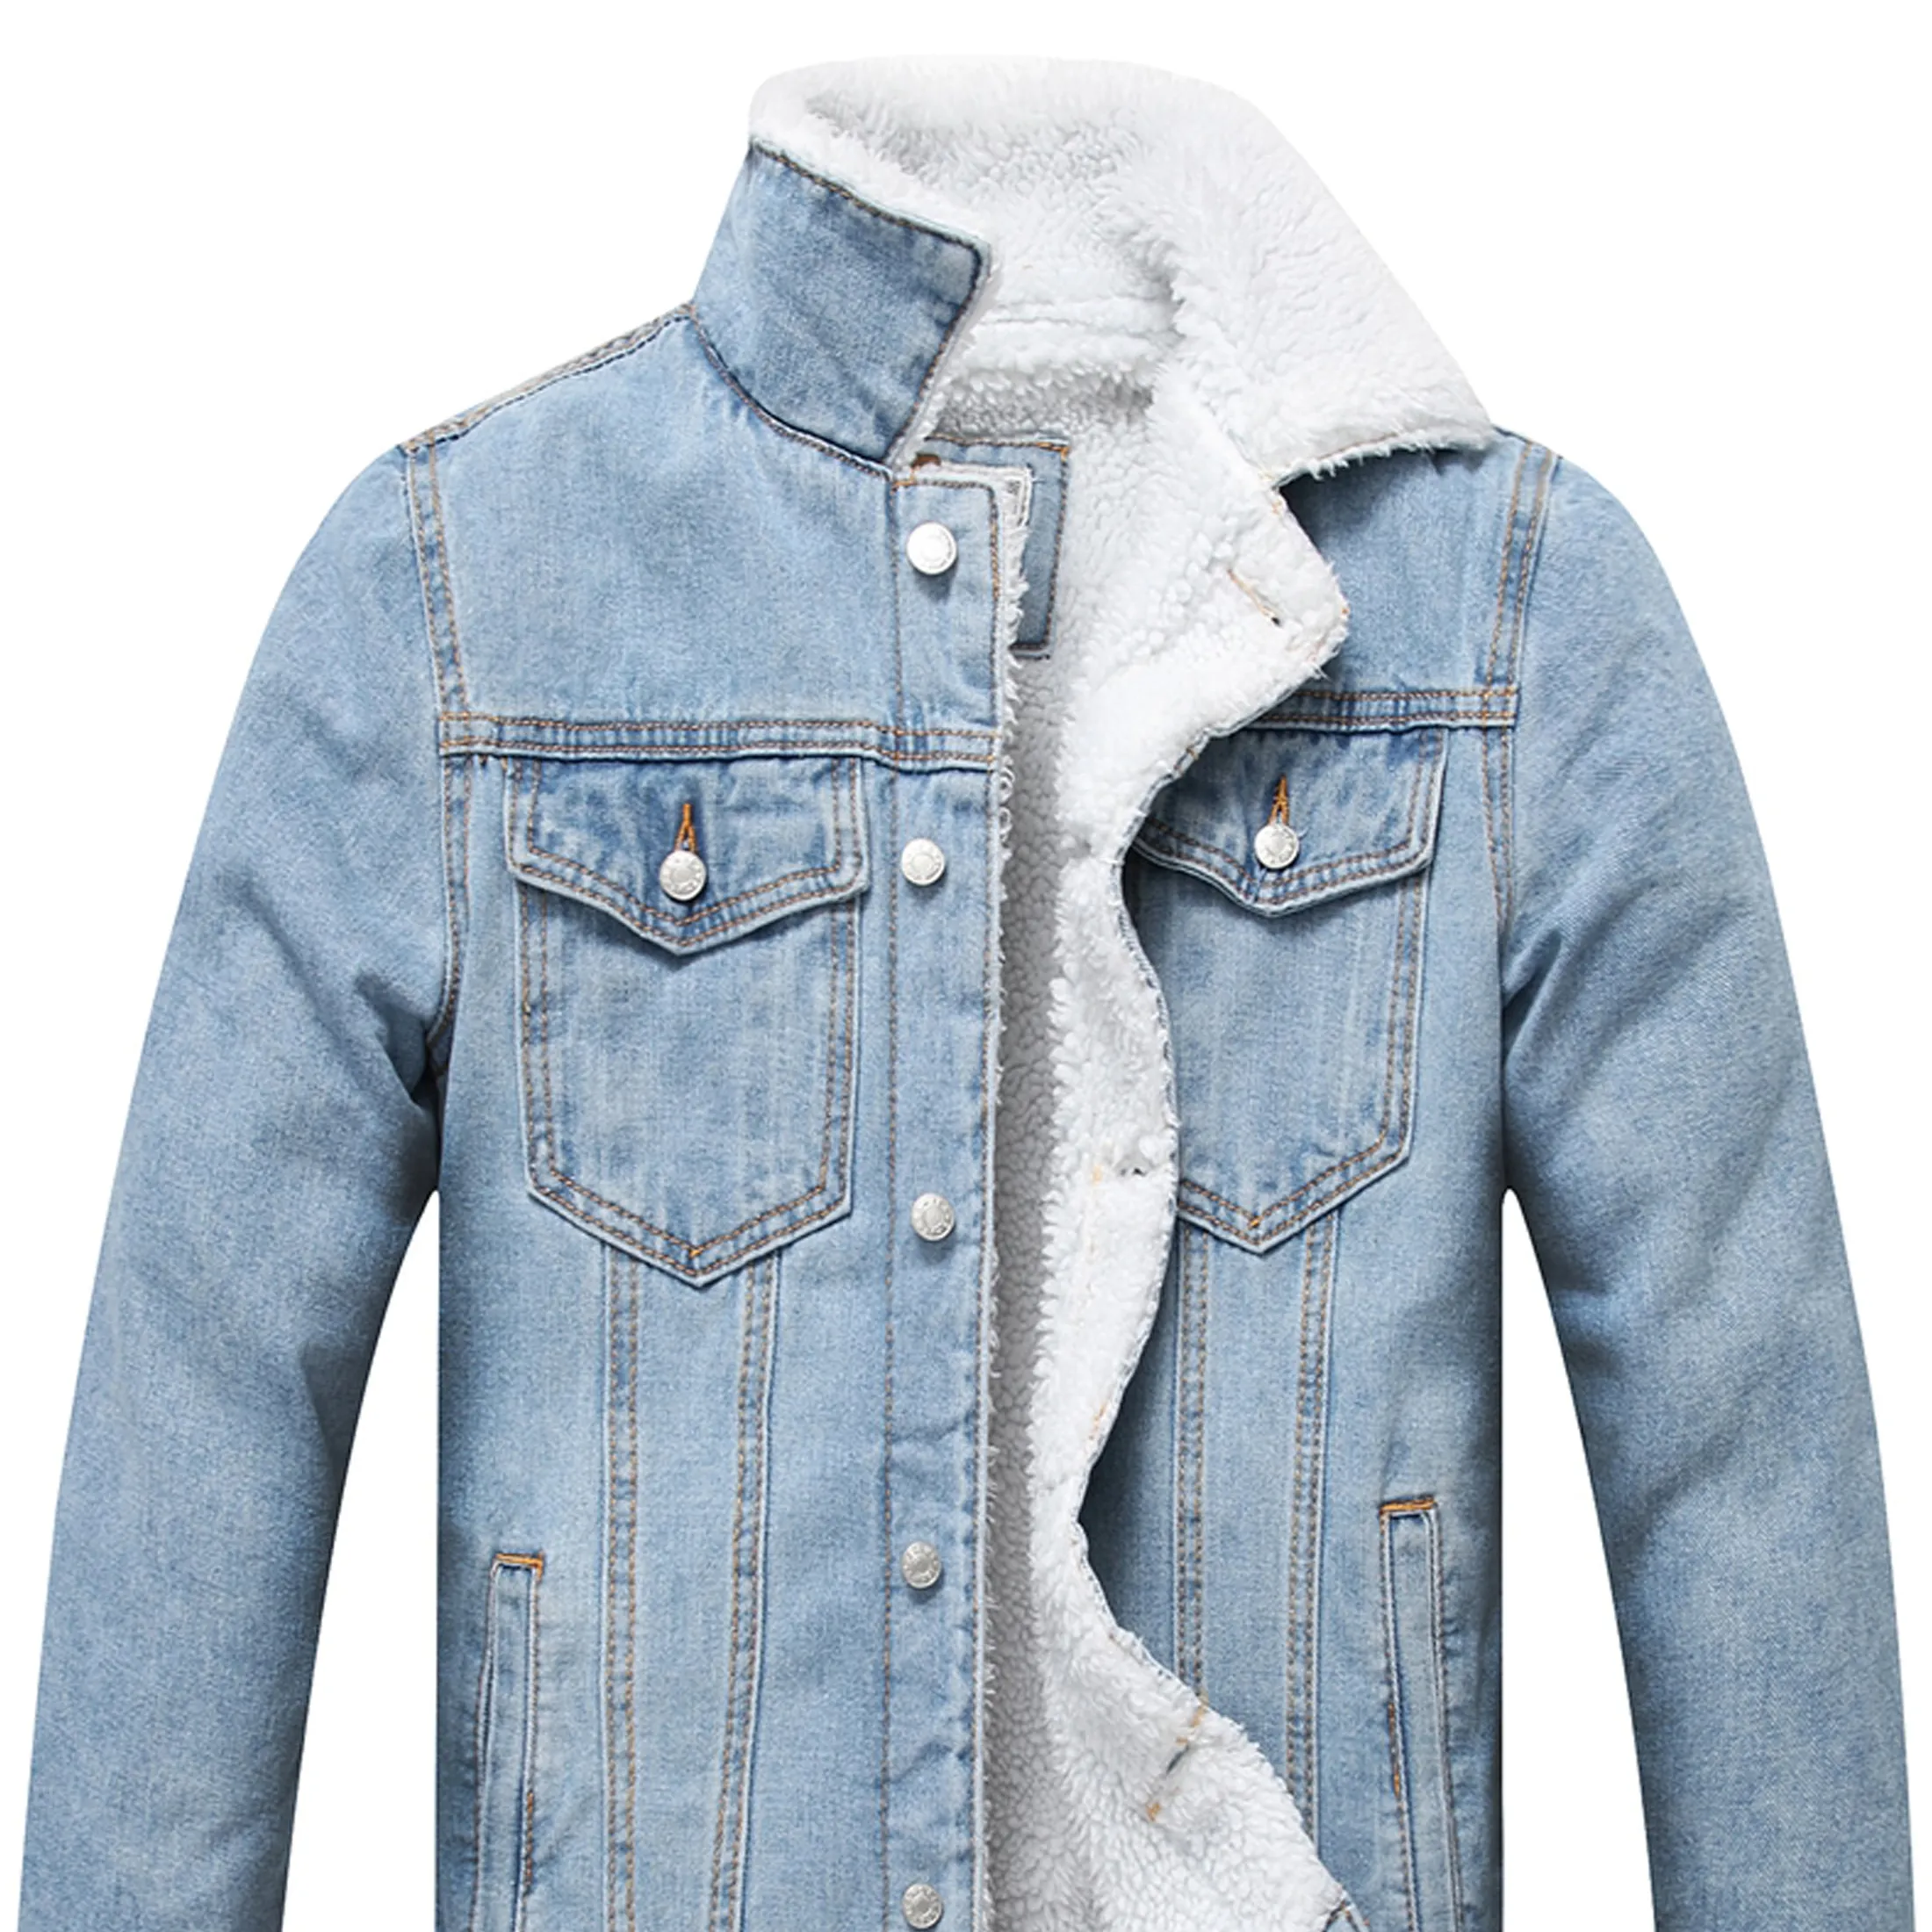 Мужская синяя джинсовая куртка, Мужская джинсовая куртка с флисовой подкладкой, оптовая продажа, джинсовая куртка на заказ